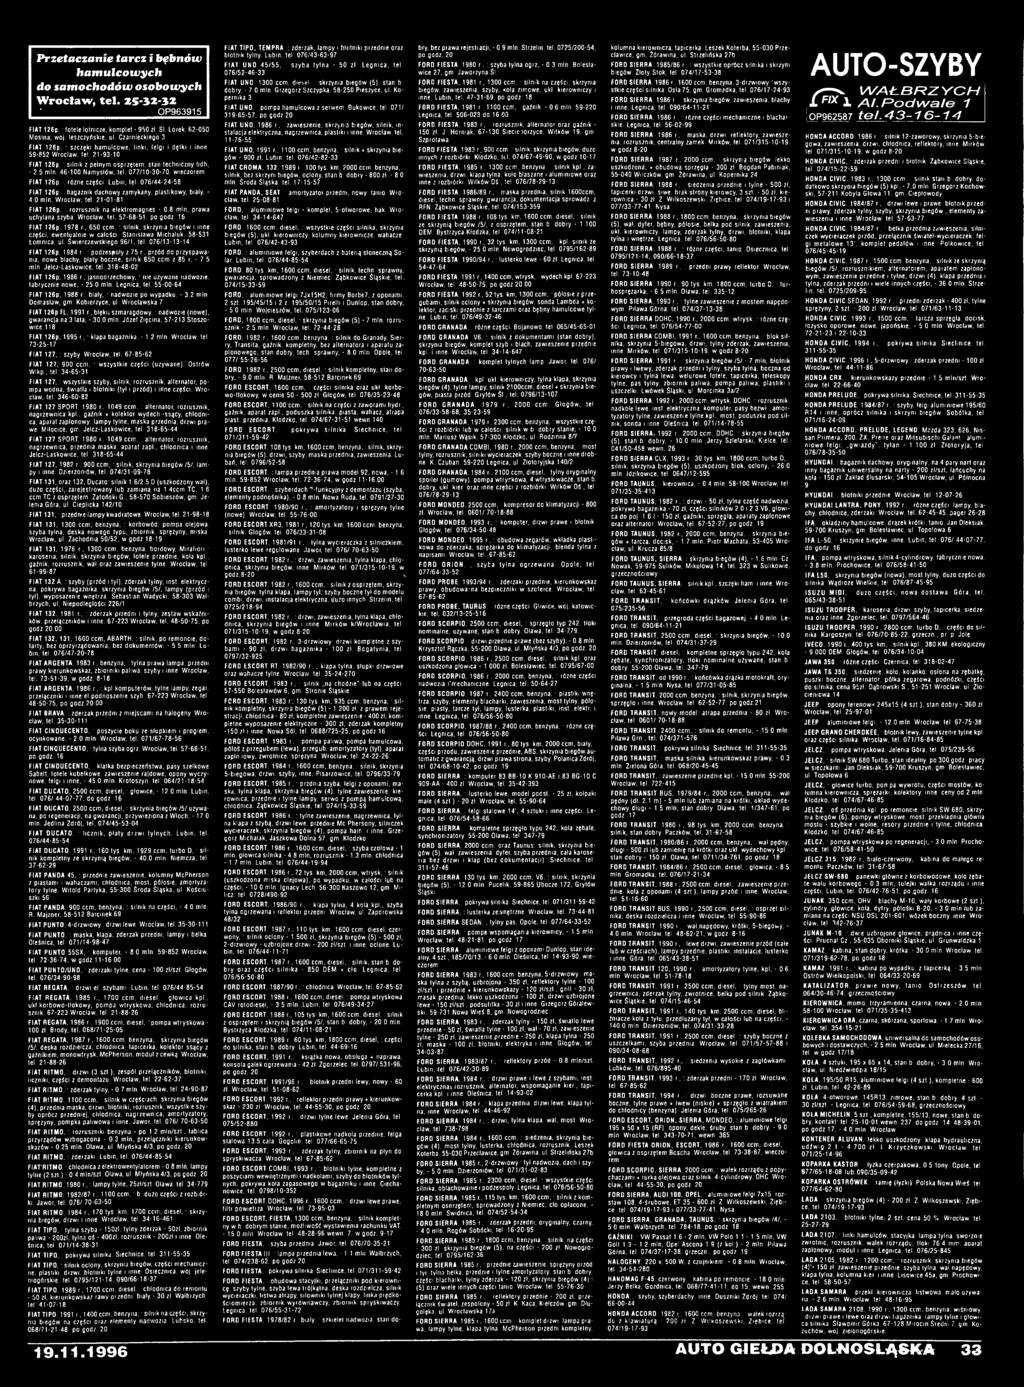 650 ccm, : silnik, skrzynia biegów i inne części, ewentualnie w całości. Stanisława Michaluk, 58-531 Łomnica, ul. Świerczewskiego 96/1, tel. 076/13-13-14 FIAT 126p, 1984 r.